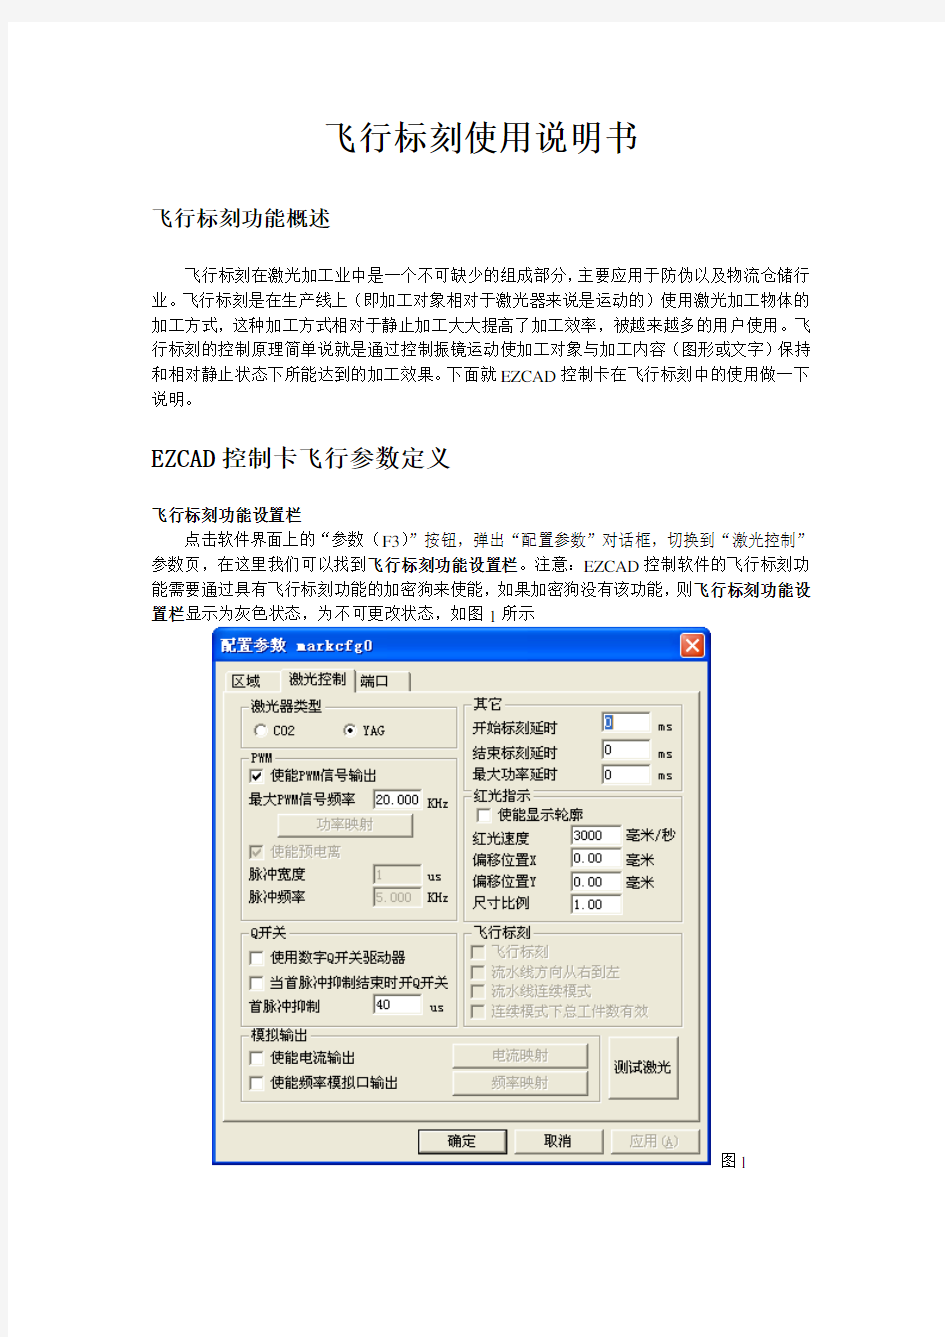 飞行打标中文使用说明书飞行标刻使用说明书pdf